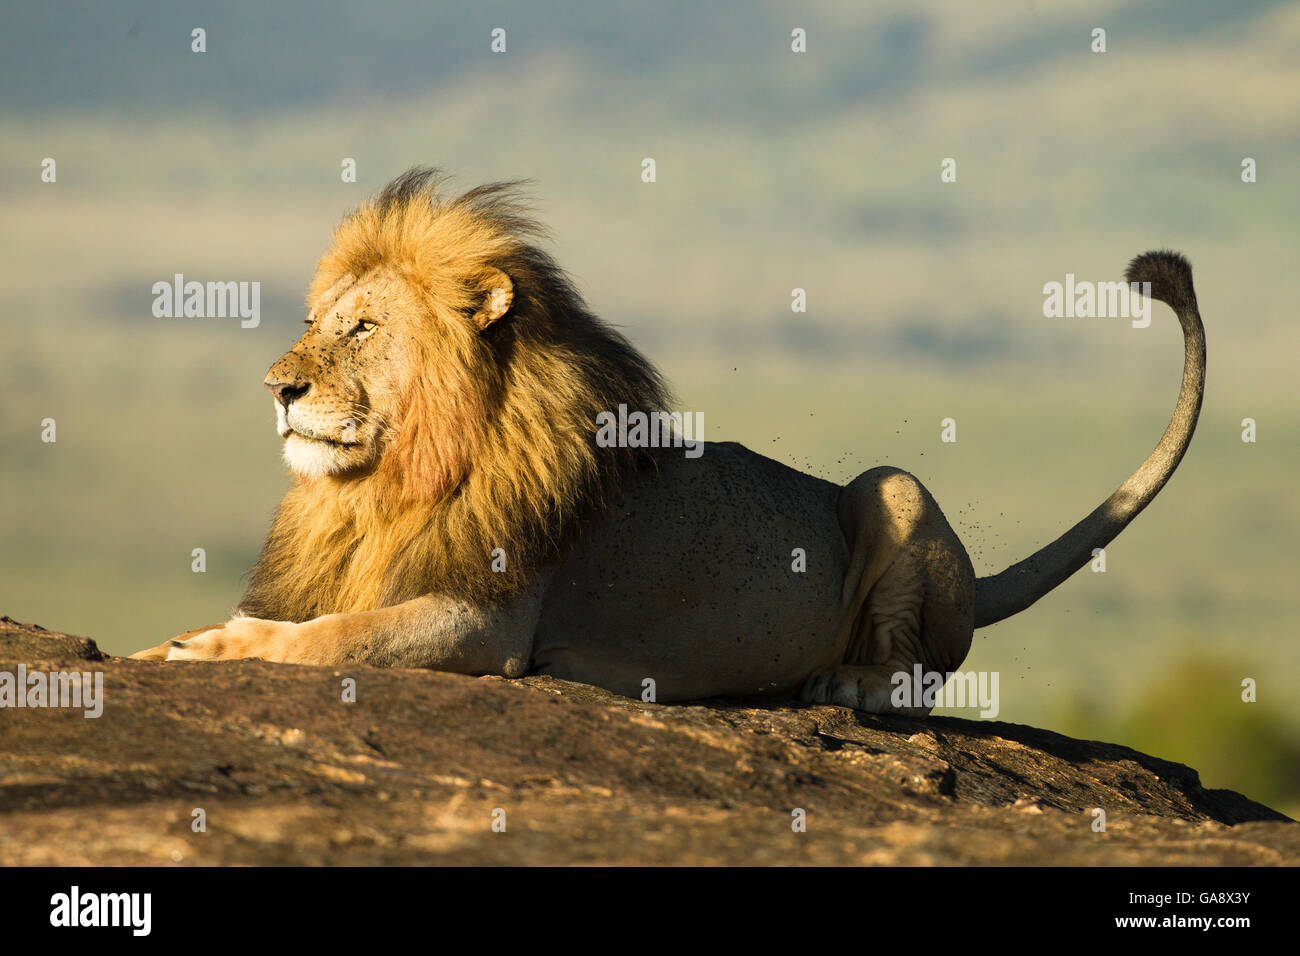 León Africano (Panthera leo), descansando sobre una roca, rodeado por las moscas, la reserva Masai Mara, Kenia. De noviembre. Foto de stock